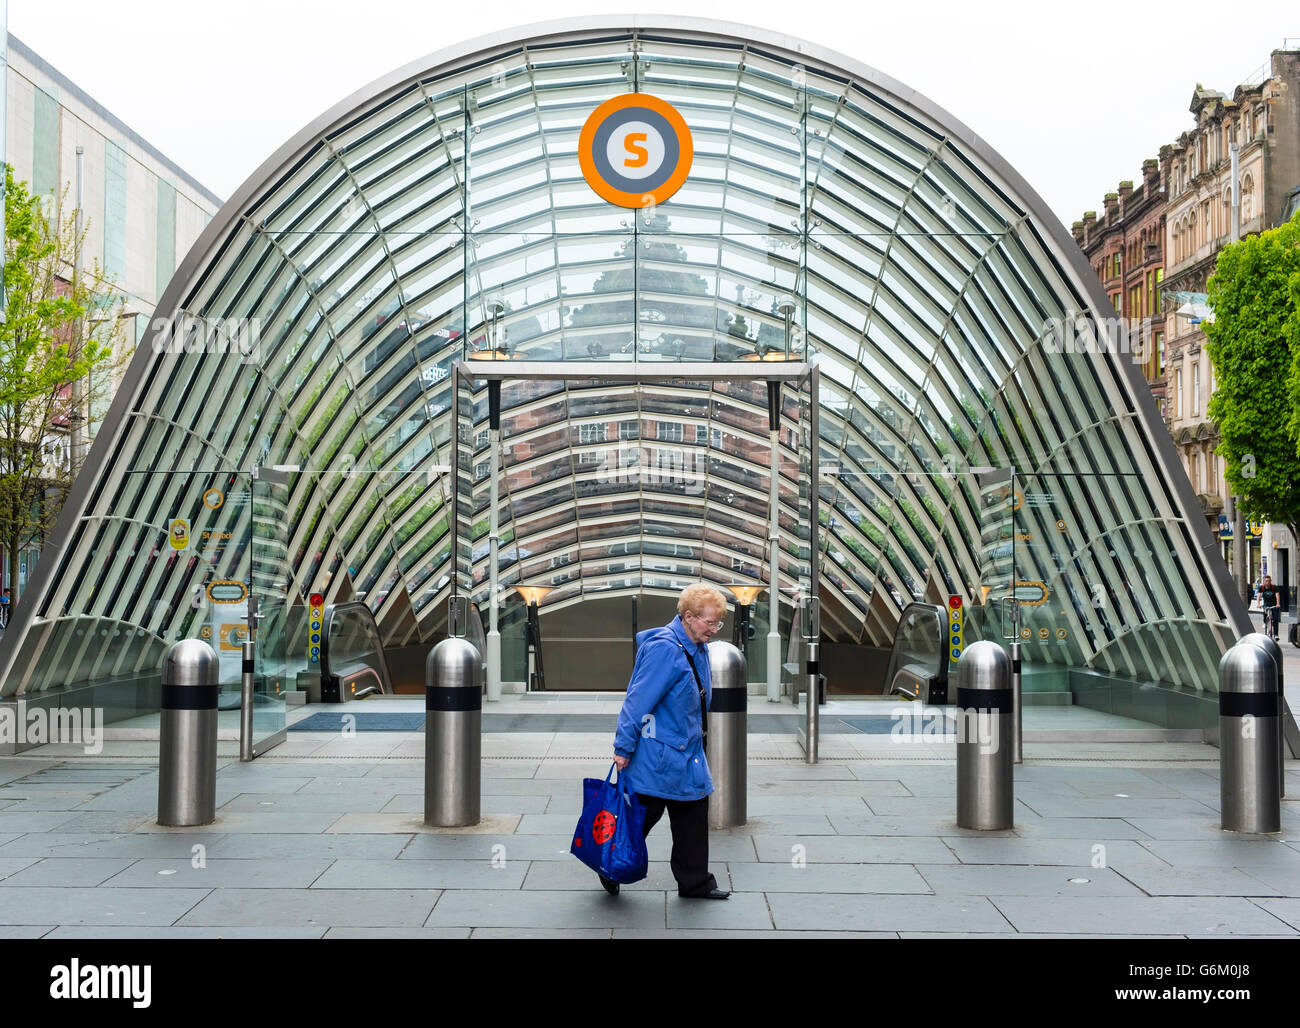 À l'entrée extérieure de la station St Enoch sur système de métro de Glasgow à Glasgow, Ecosse, Royaume-Uni Banque D'Images